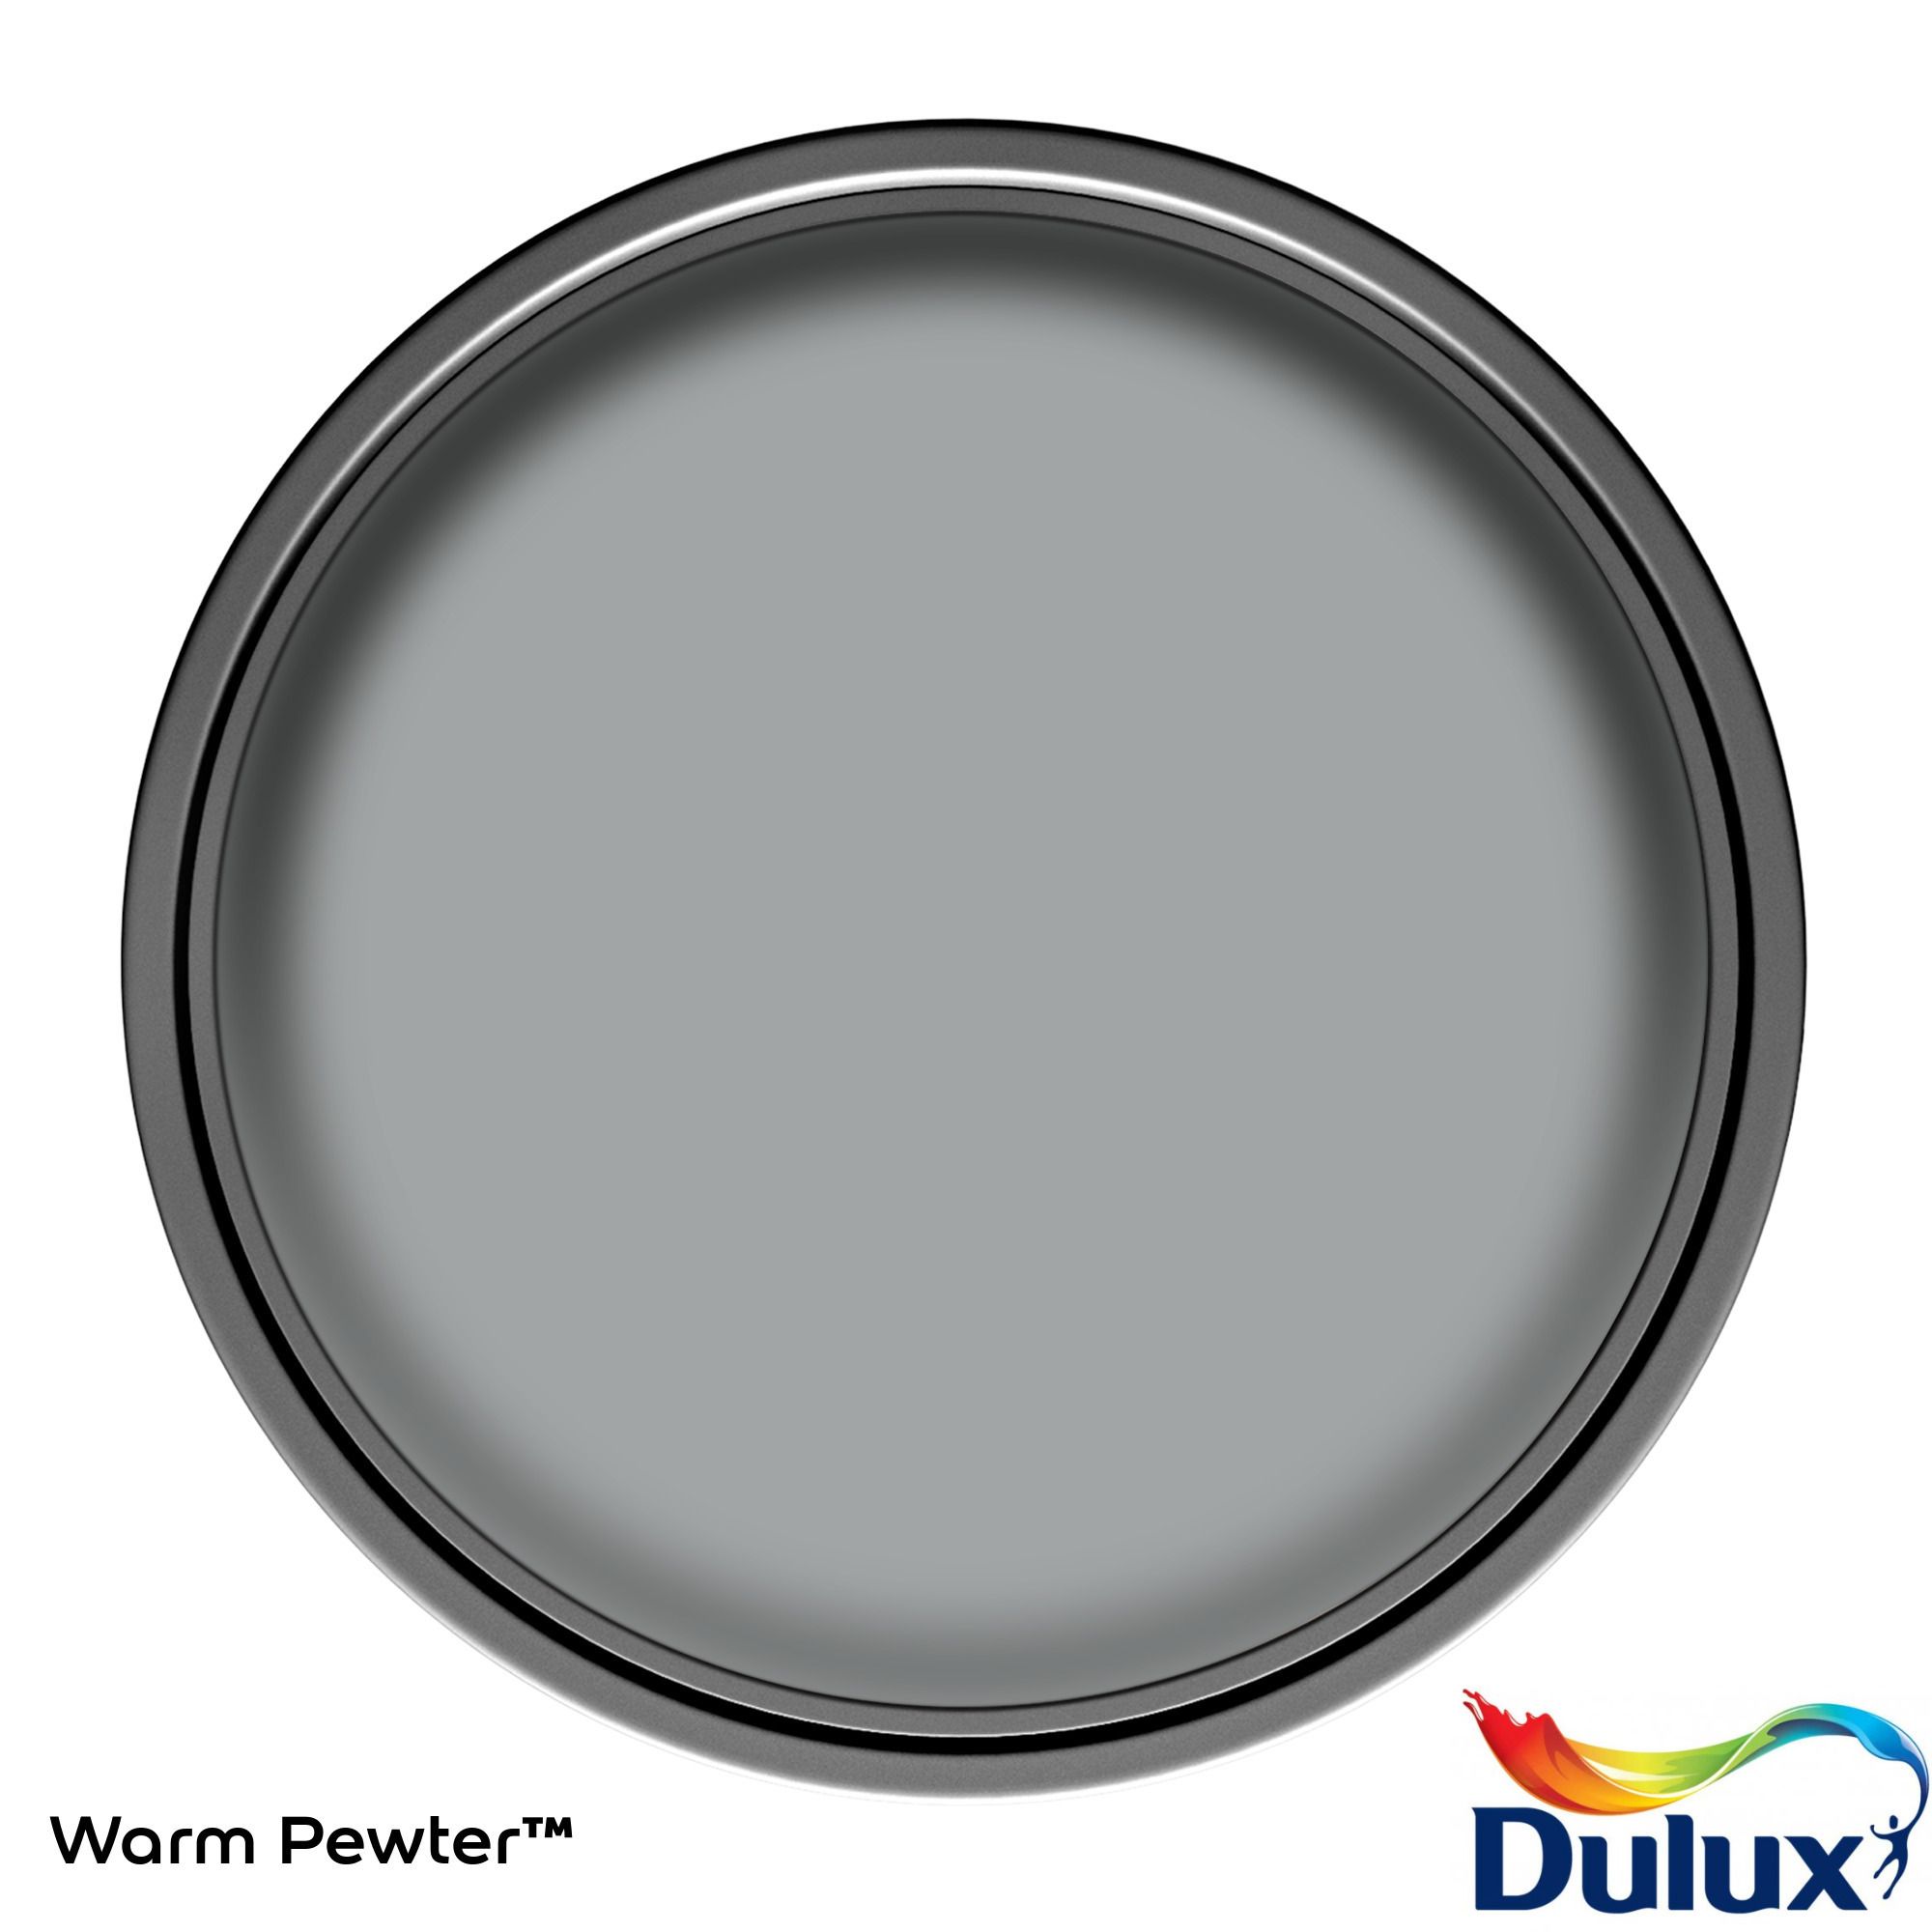 Dulux One coat Warm pewter Matt Emulsion paint, 2.5L